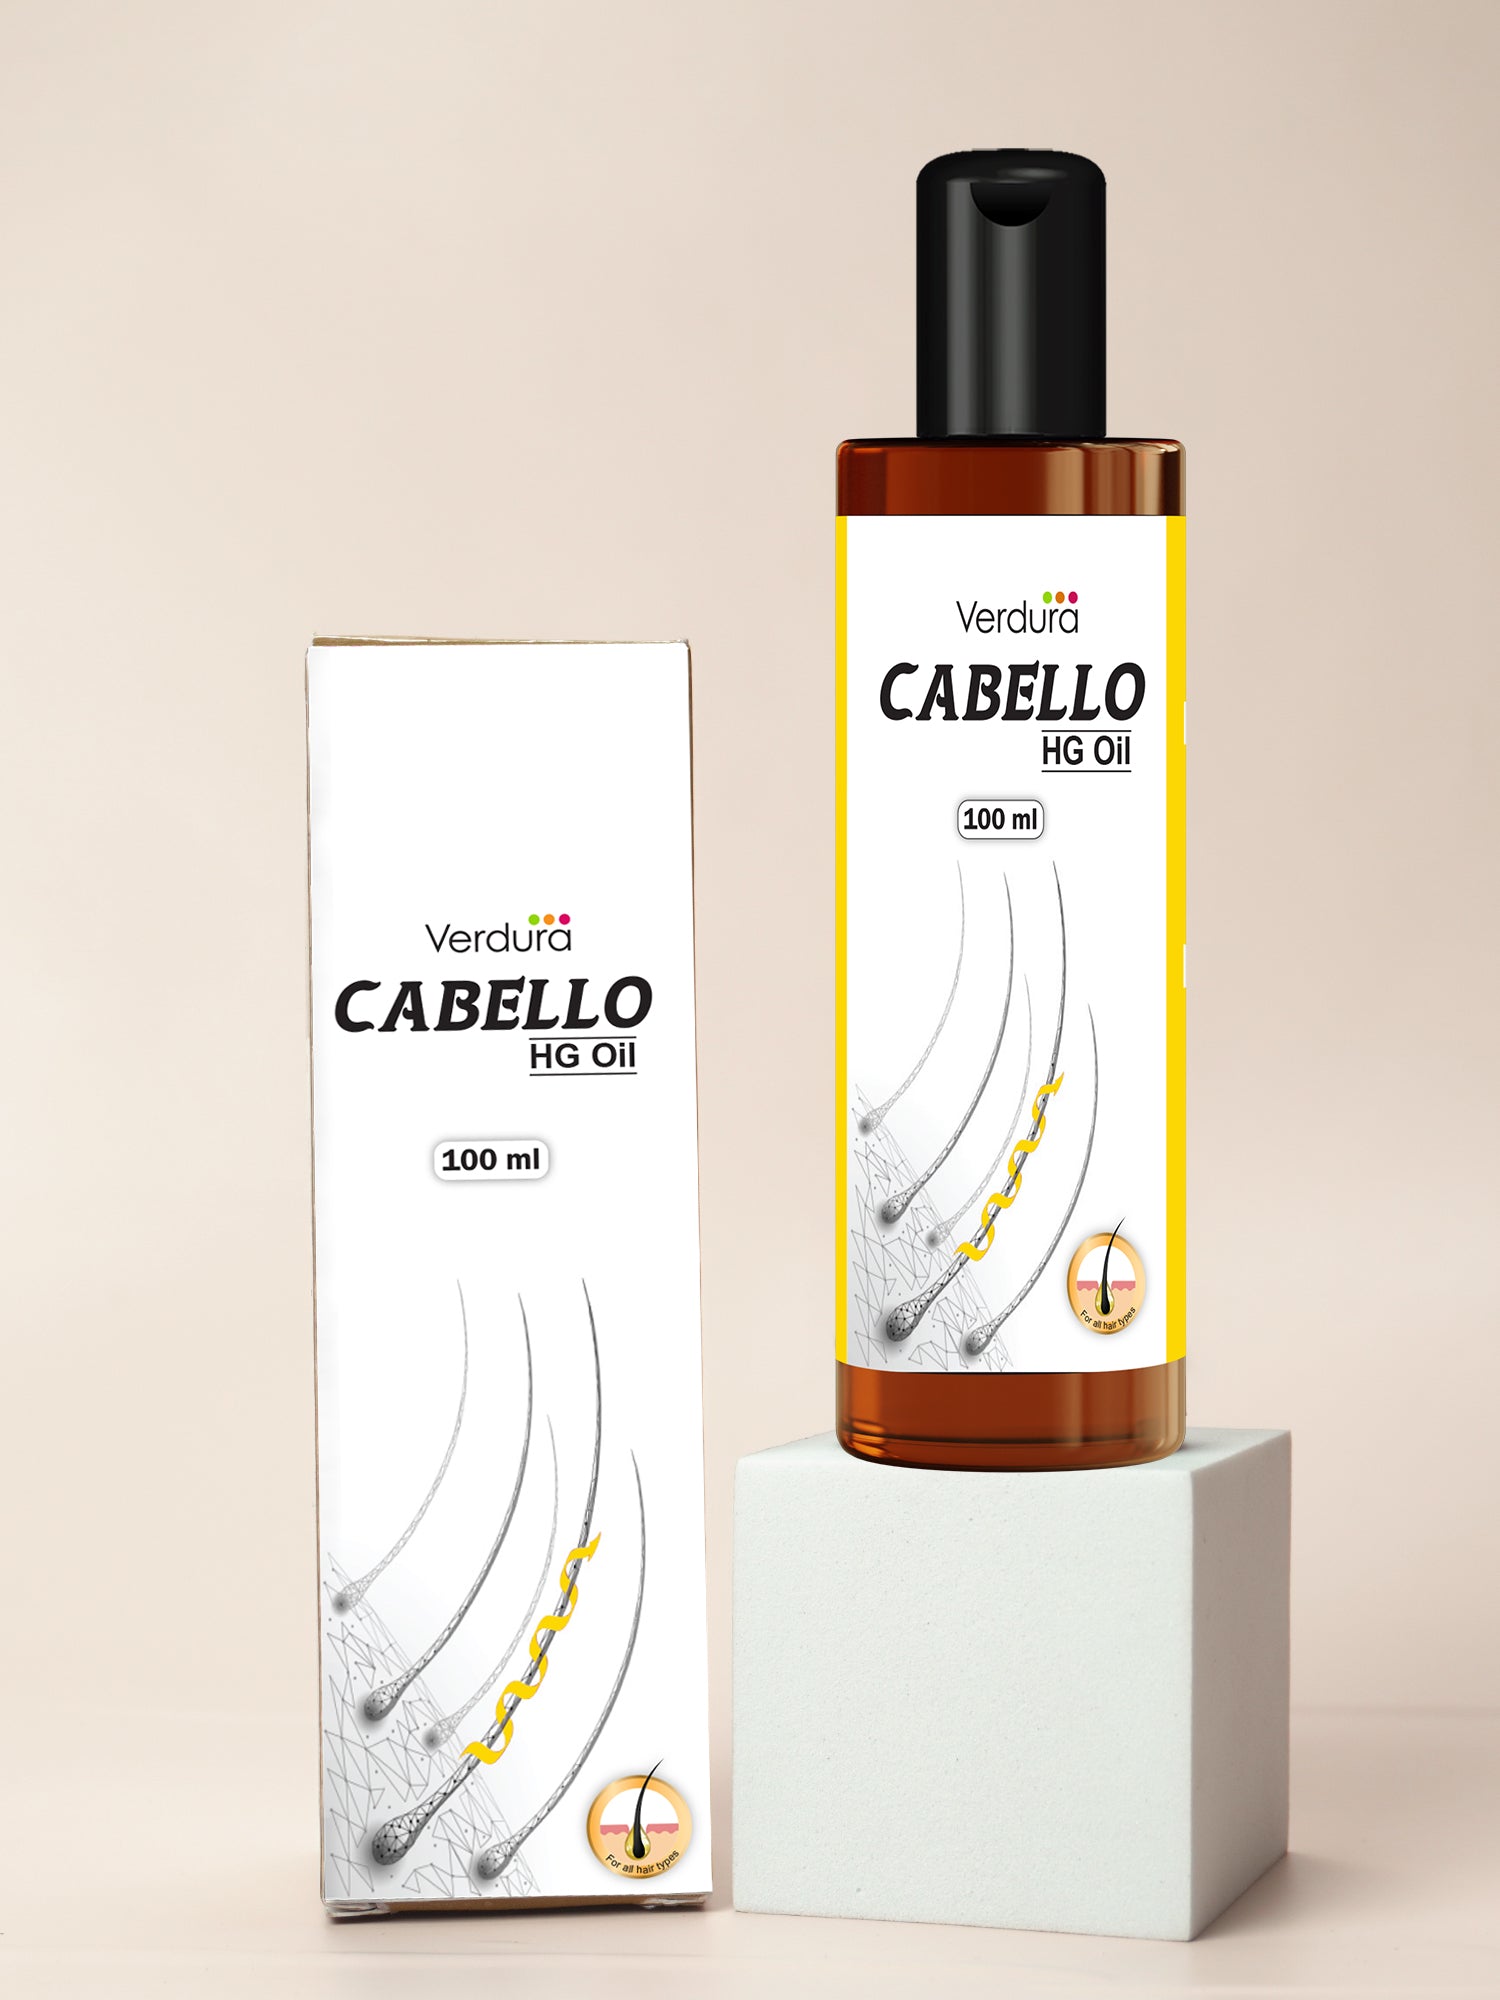 Verdura Cabello HG oil